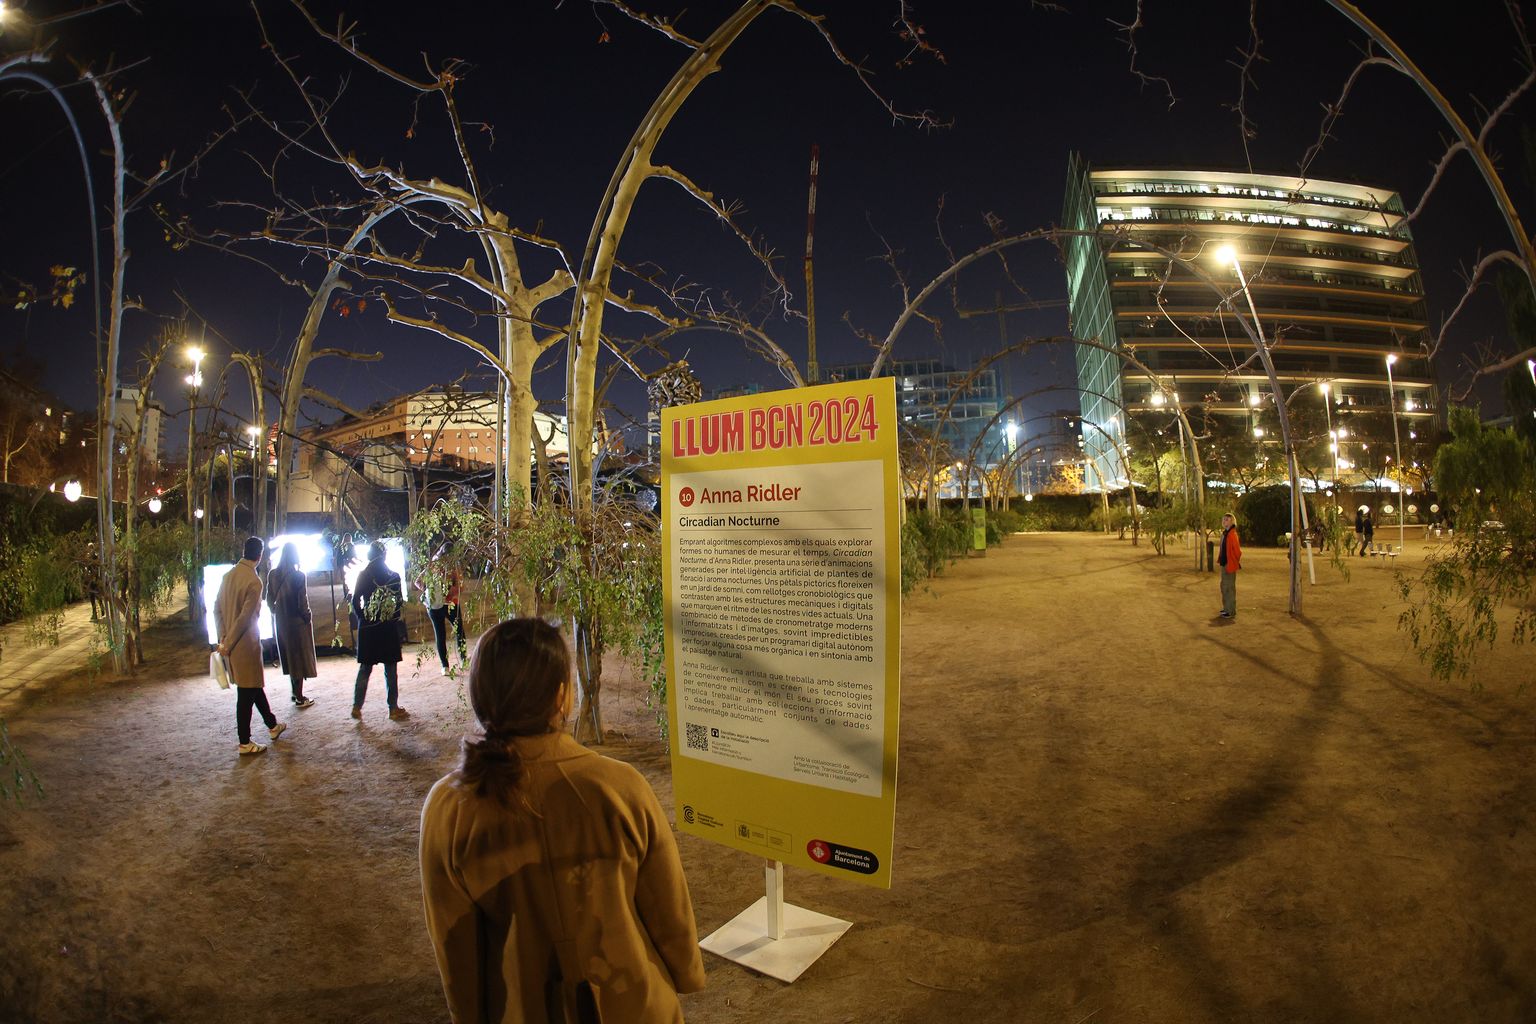 Personas pasean por el parque del Centre del Poblenou. Una mujer mira el cartel del Llum BCN 2024. “Circadian Nocturne”, obra de Anna Ridler. En el parque del Centre del Poblenou (Espacio Voltes) - avda. Diagonal, 130